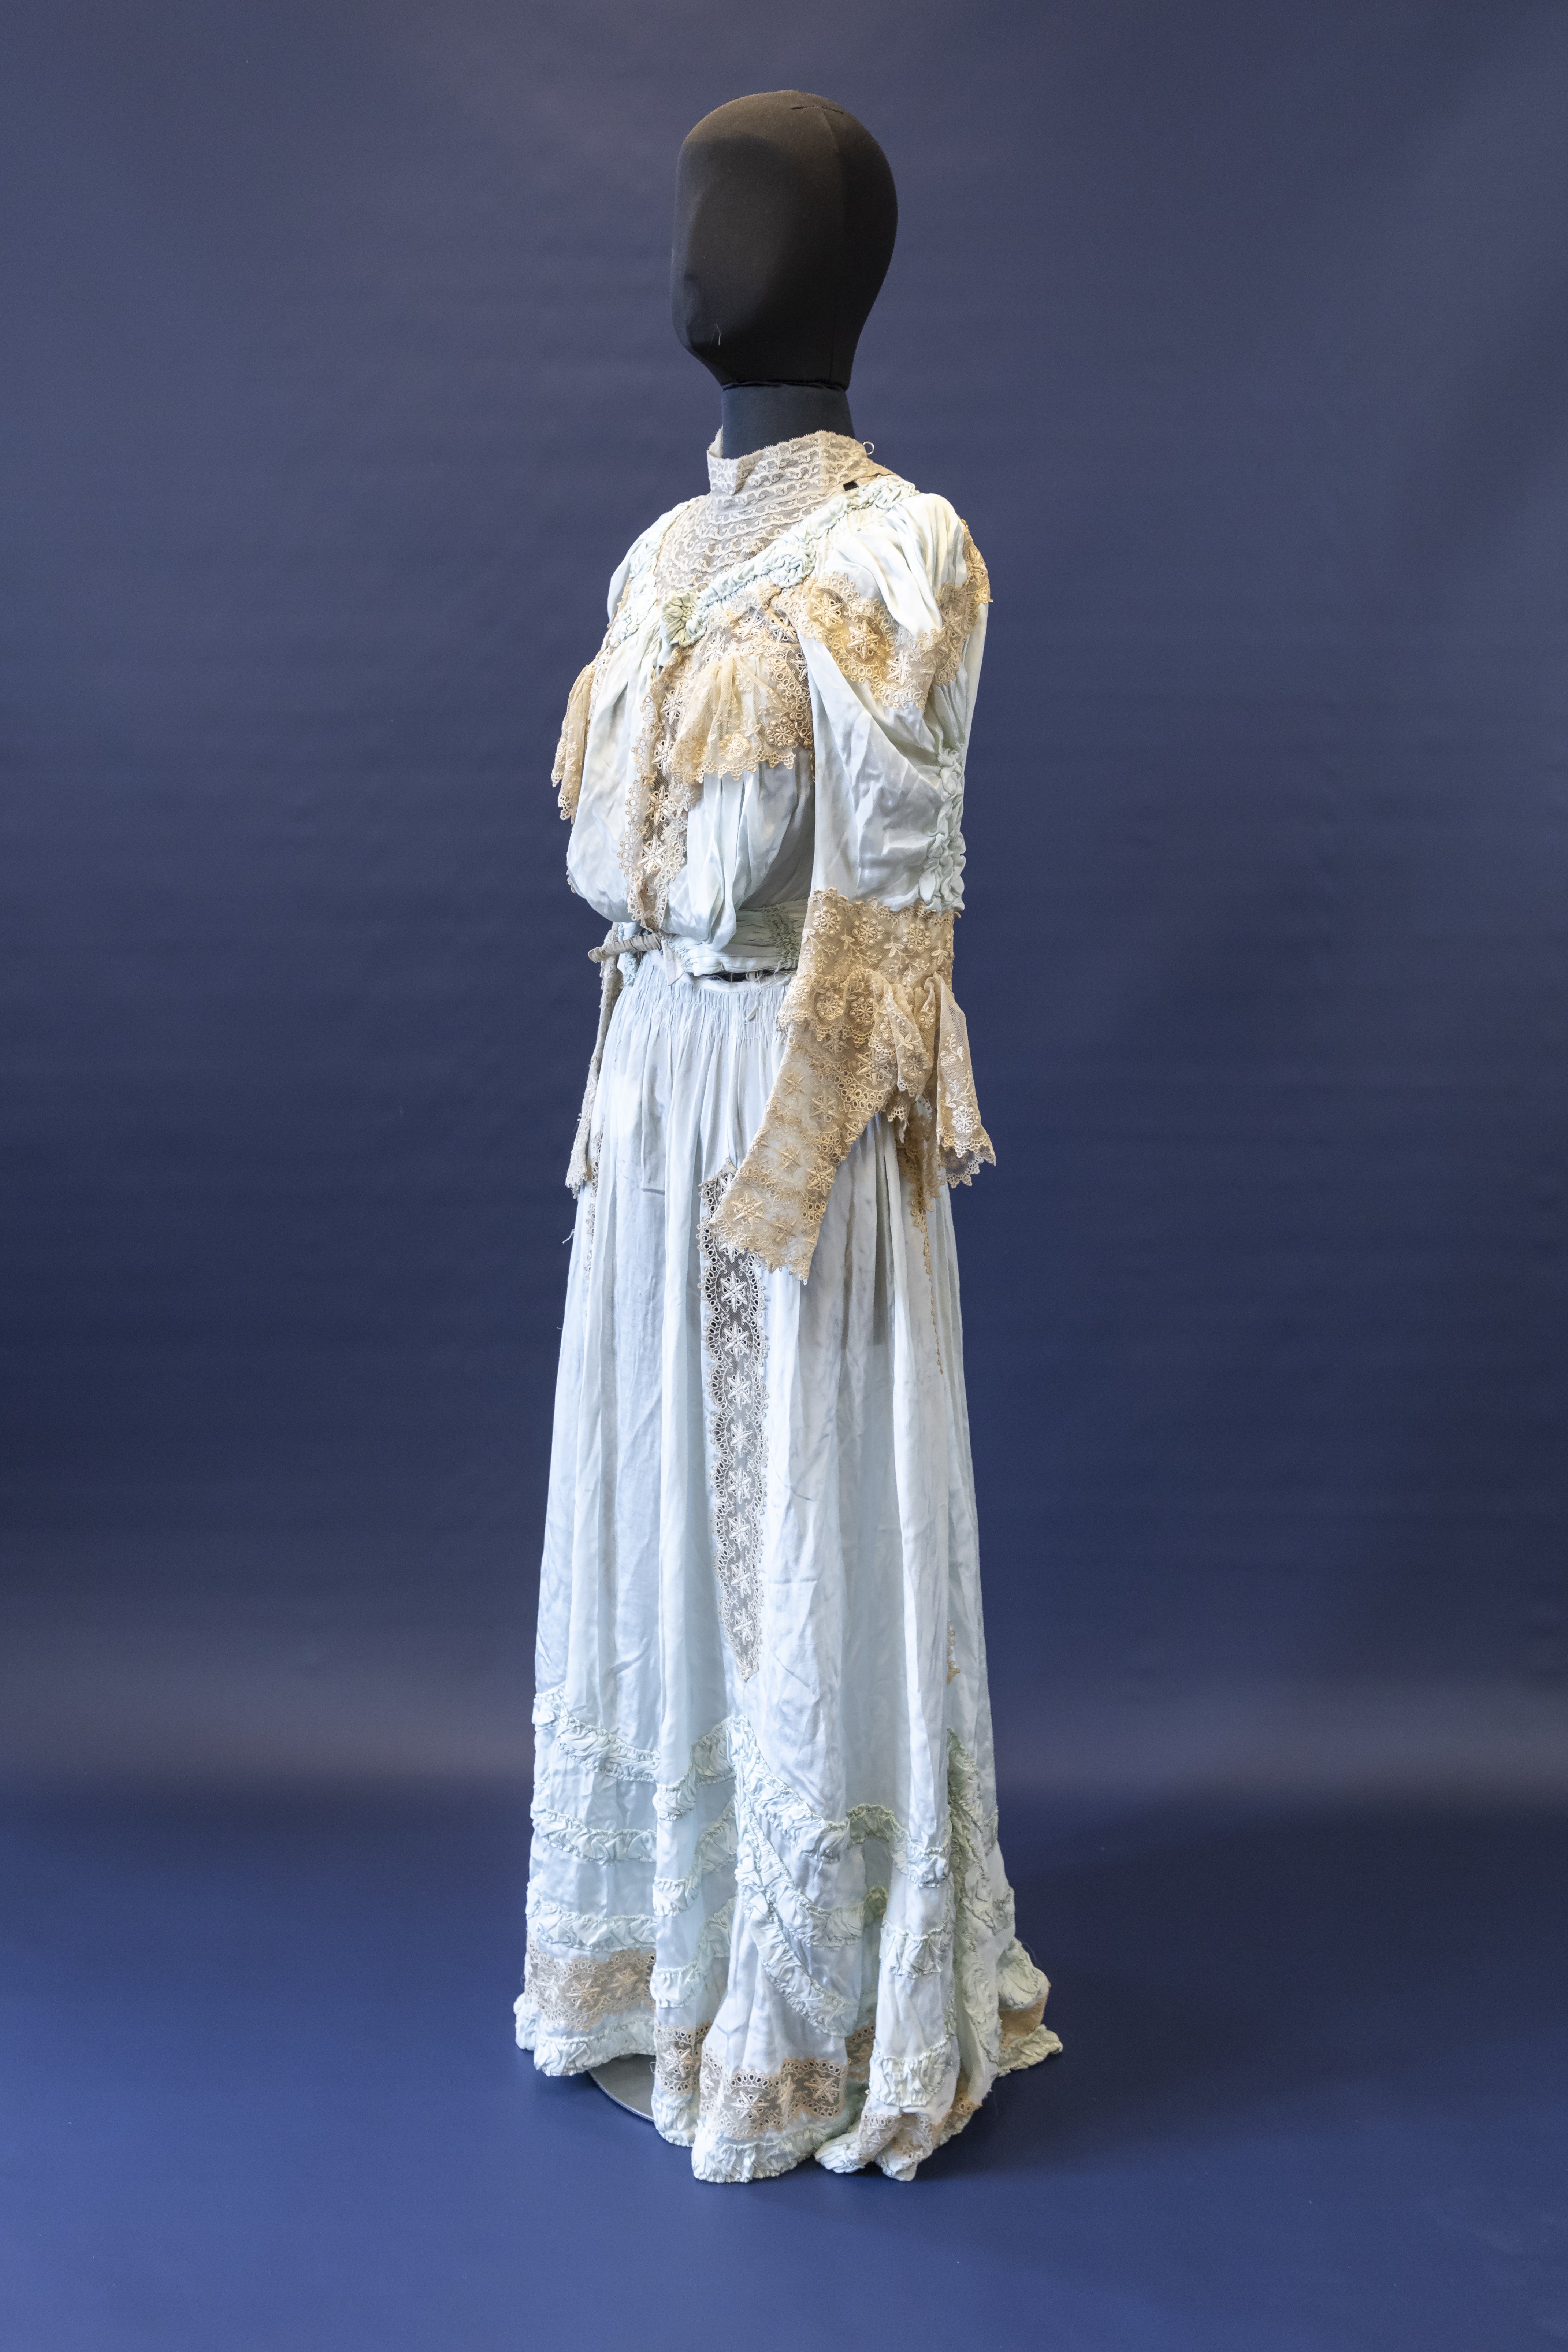 Gesellschaftskleid (Brautjungfernkleid), London, um 1905 (Schloß Wernigerode GmbH RR-F)